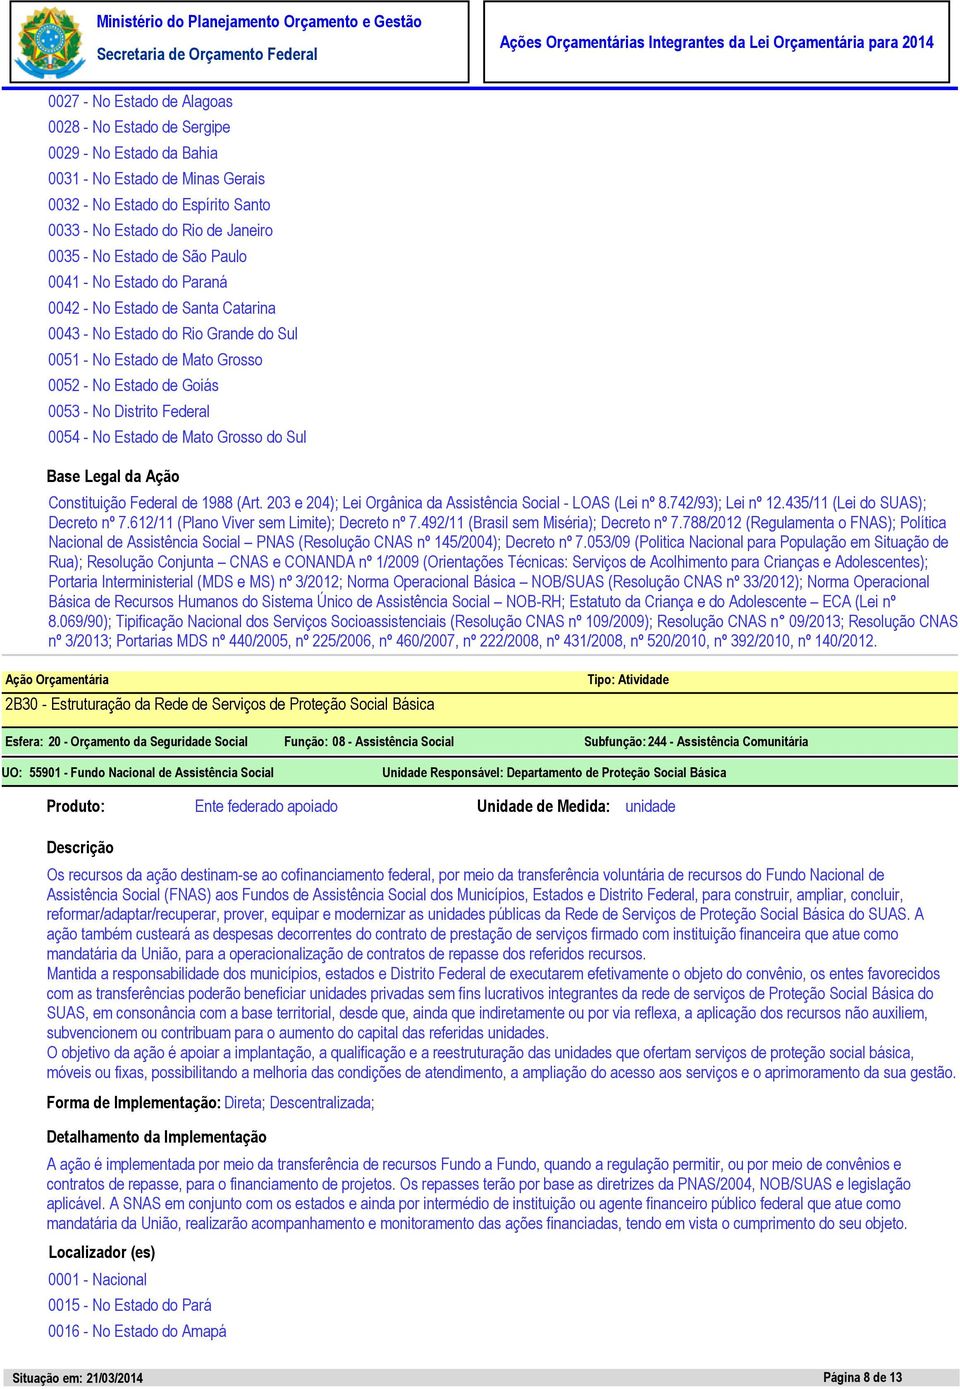 Federal 0054 - No Estado de Mato Grosso do Sul Constituição Federal de 1988 (Art. 203 e 204); Lei Orgânica da Assistência Social - LOAS (Lei nº 8.742/93); Lei nº 12.435/11 (Lei do SUAS); Decreto nº 7.